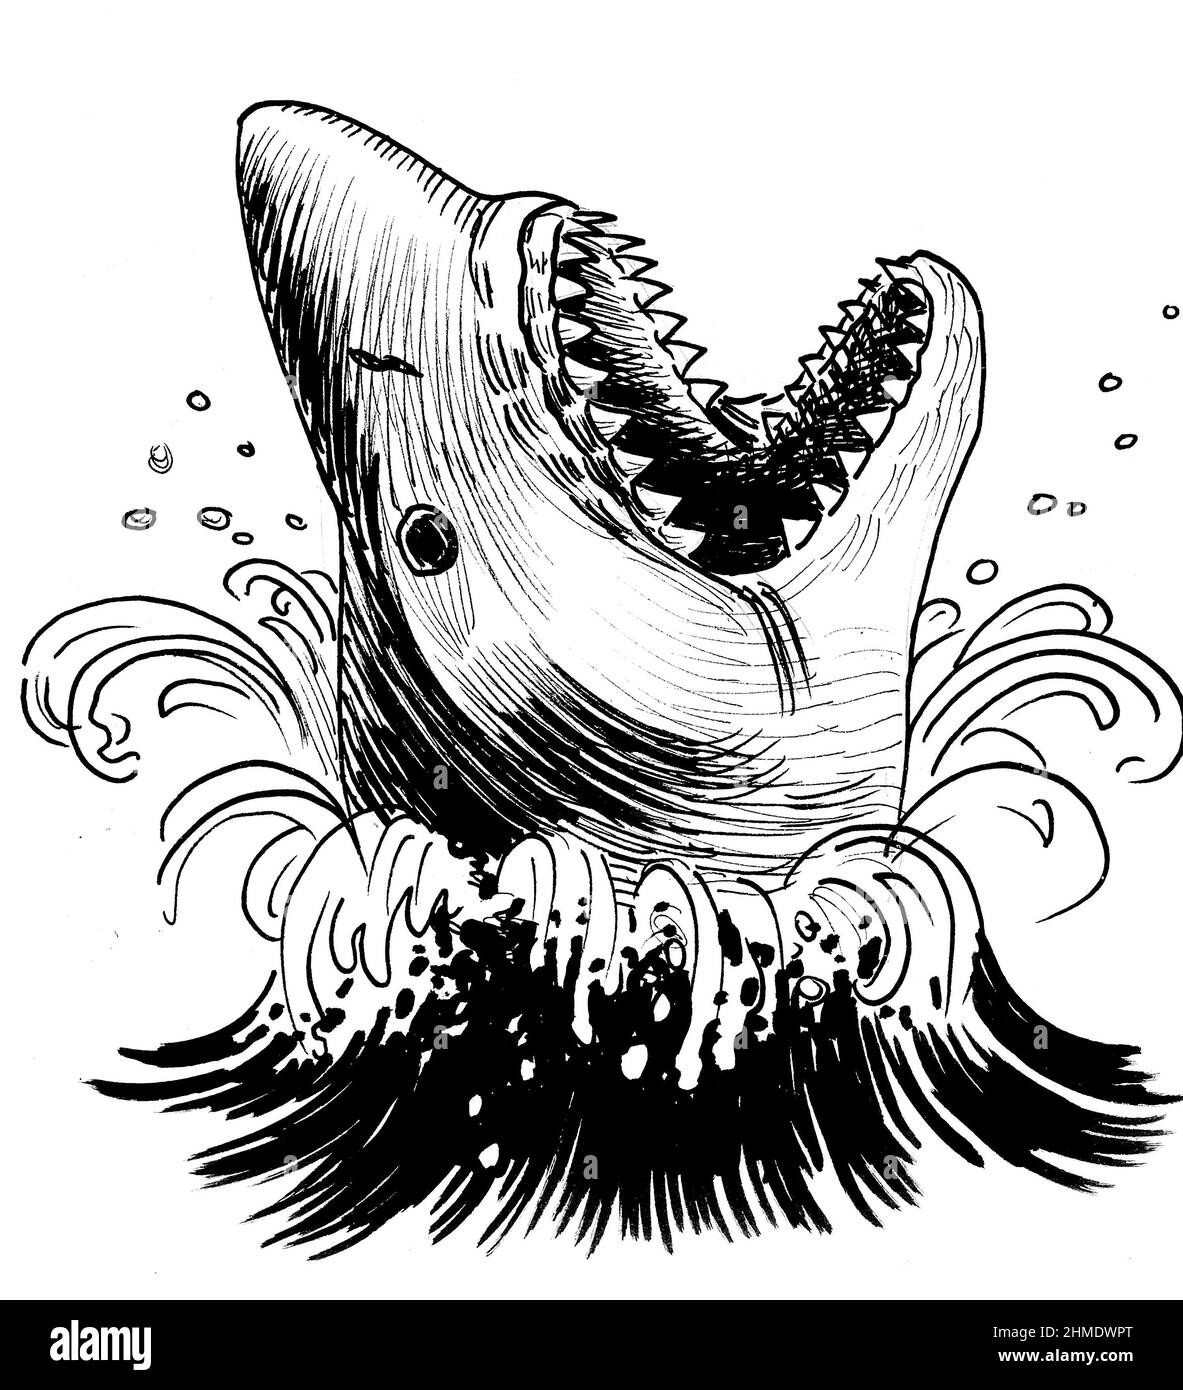 Requin en colère dans l'eau de mer. Dessin noir et blanc Banque D'Images